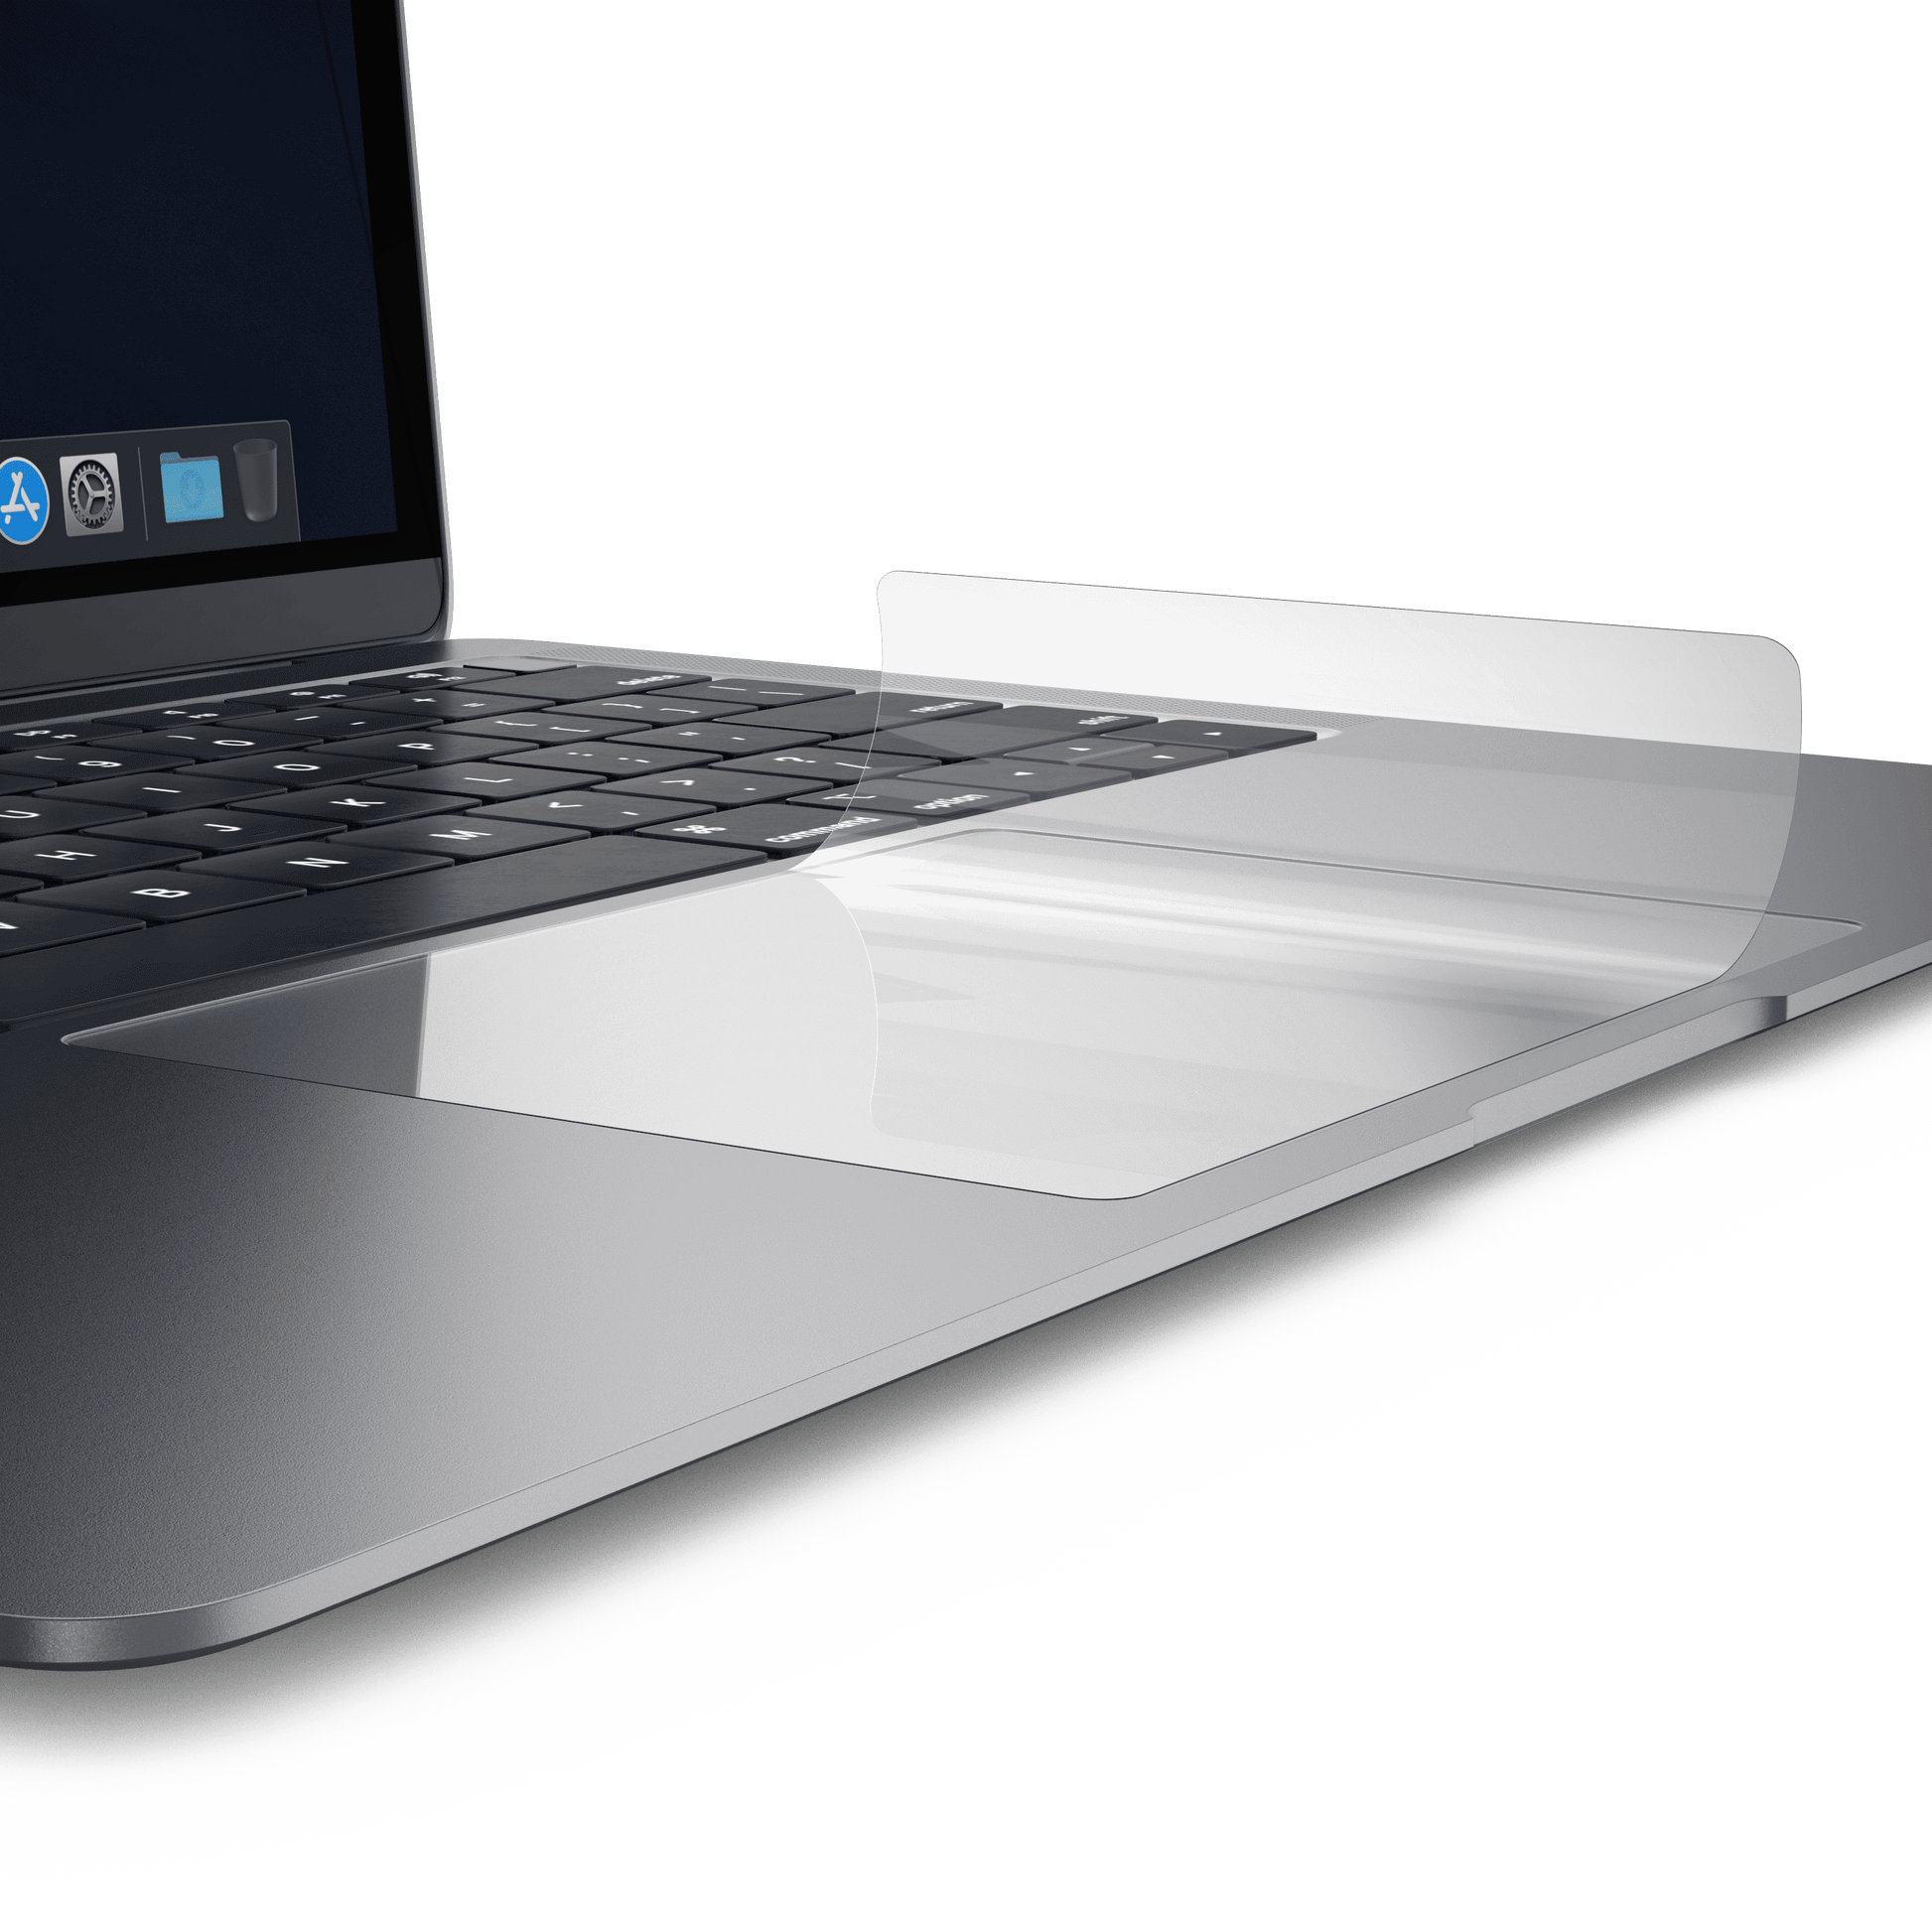 MoArmouz - Trackpad Protector for MacBook Air 13" (2019-2018)